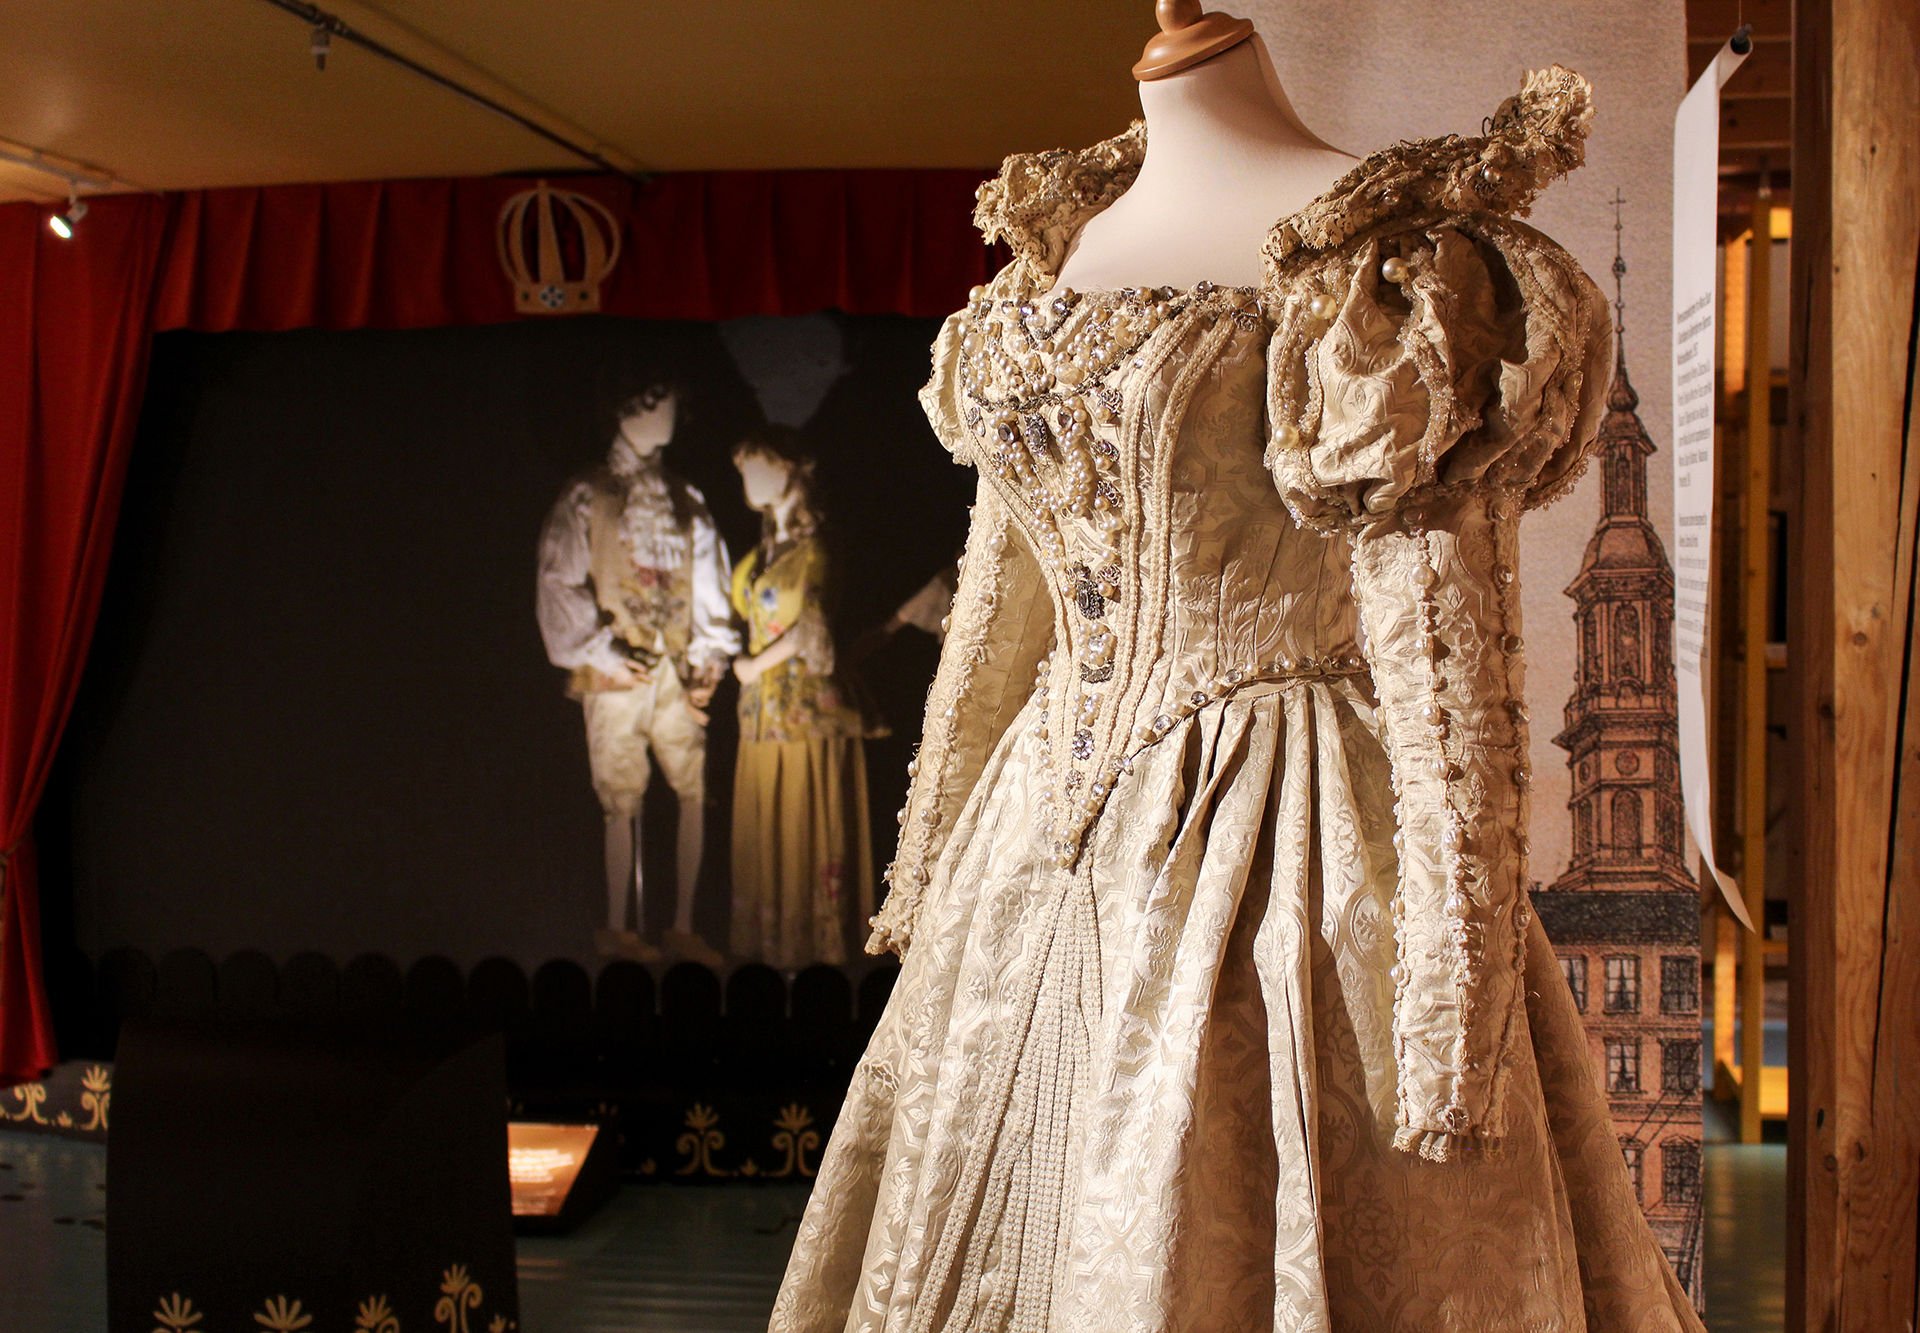 En flott kjole er hovedmotivet. I bakgrunnen to utstillingsdukker med teaterbekledning fra gamle dager.